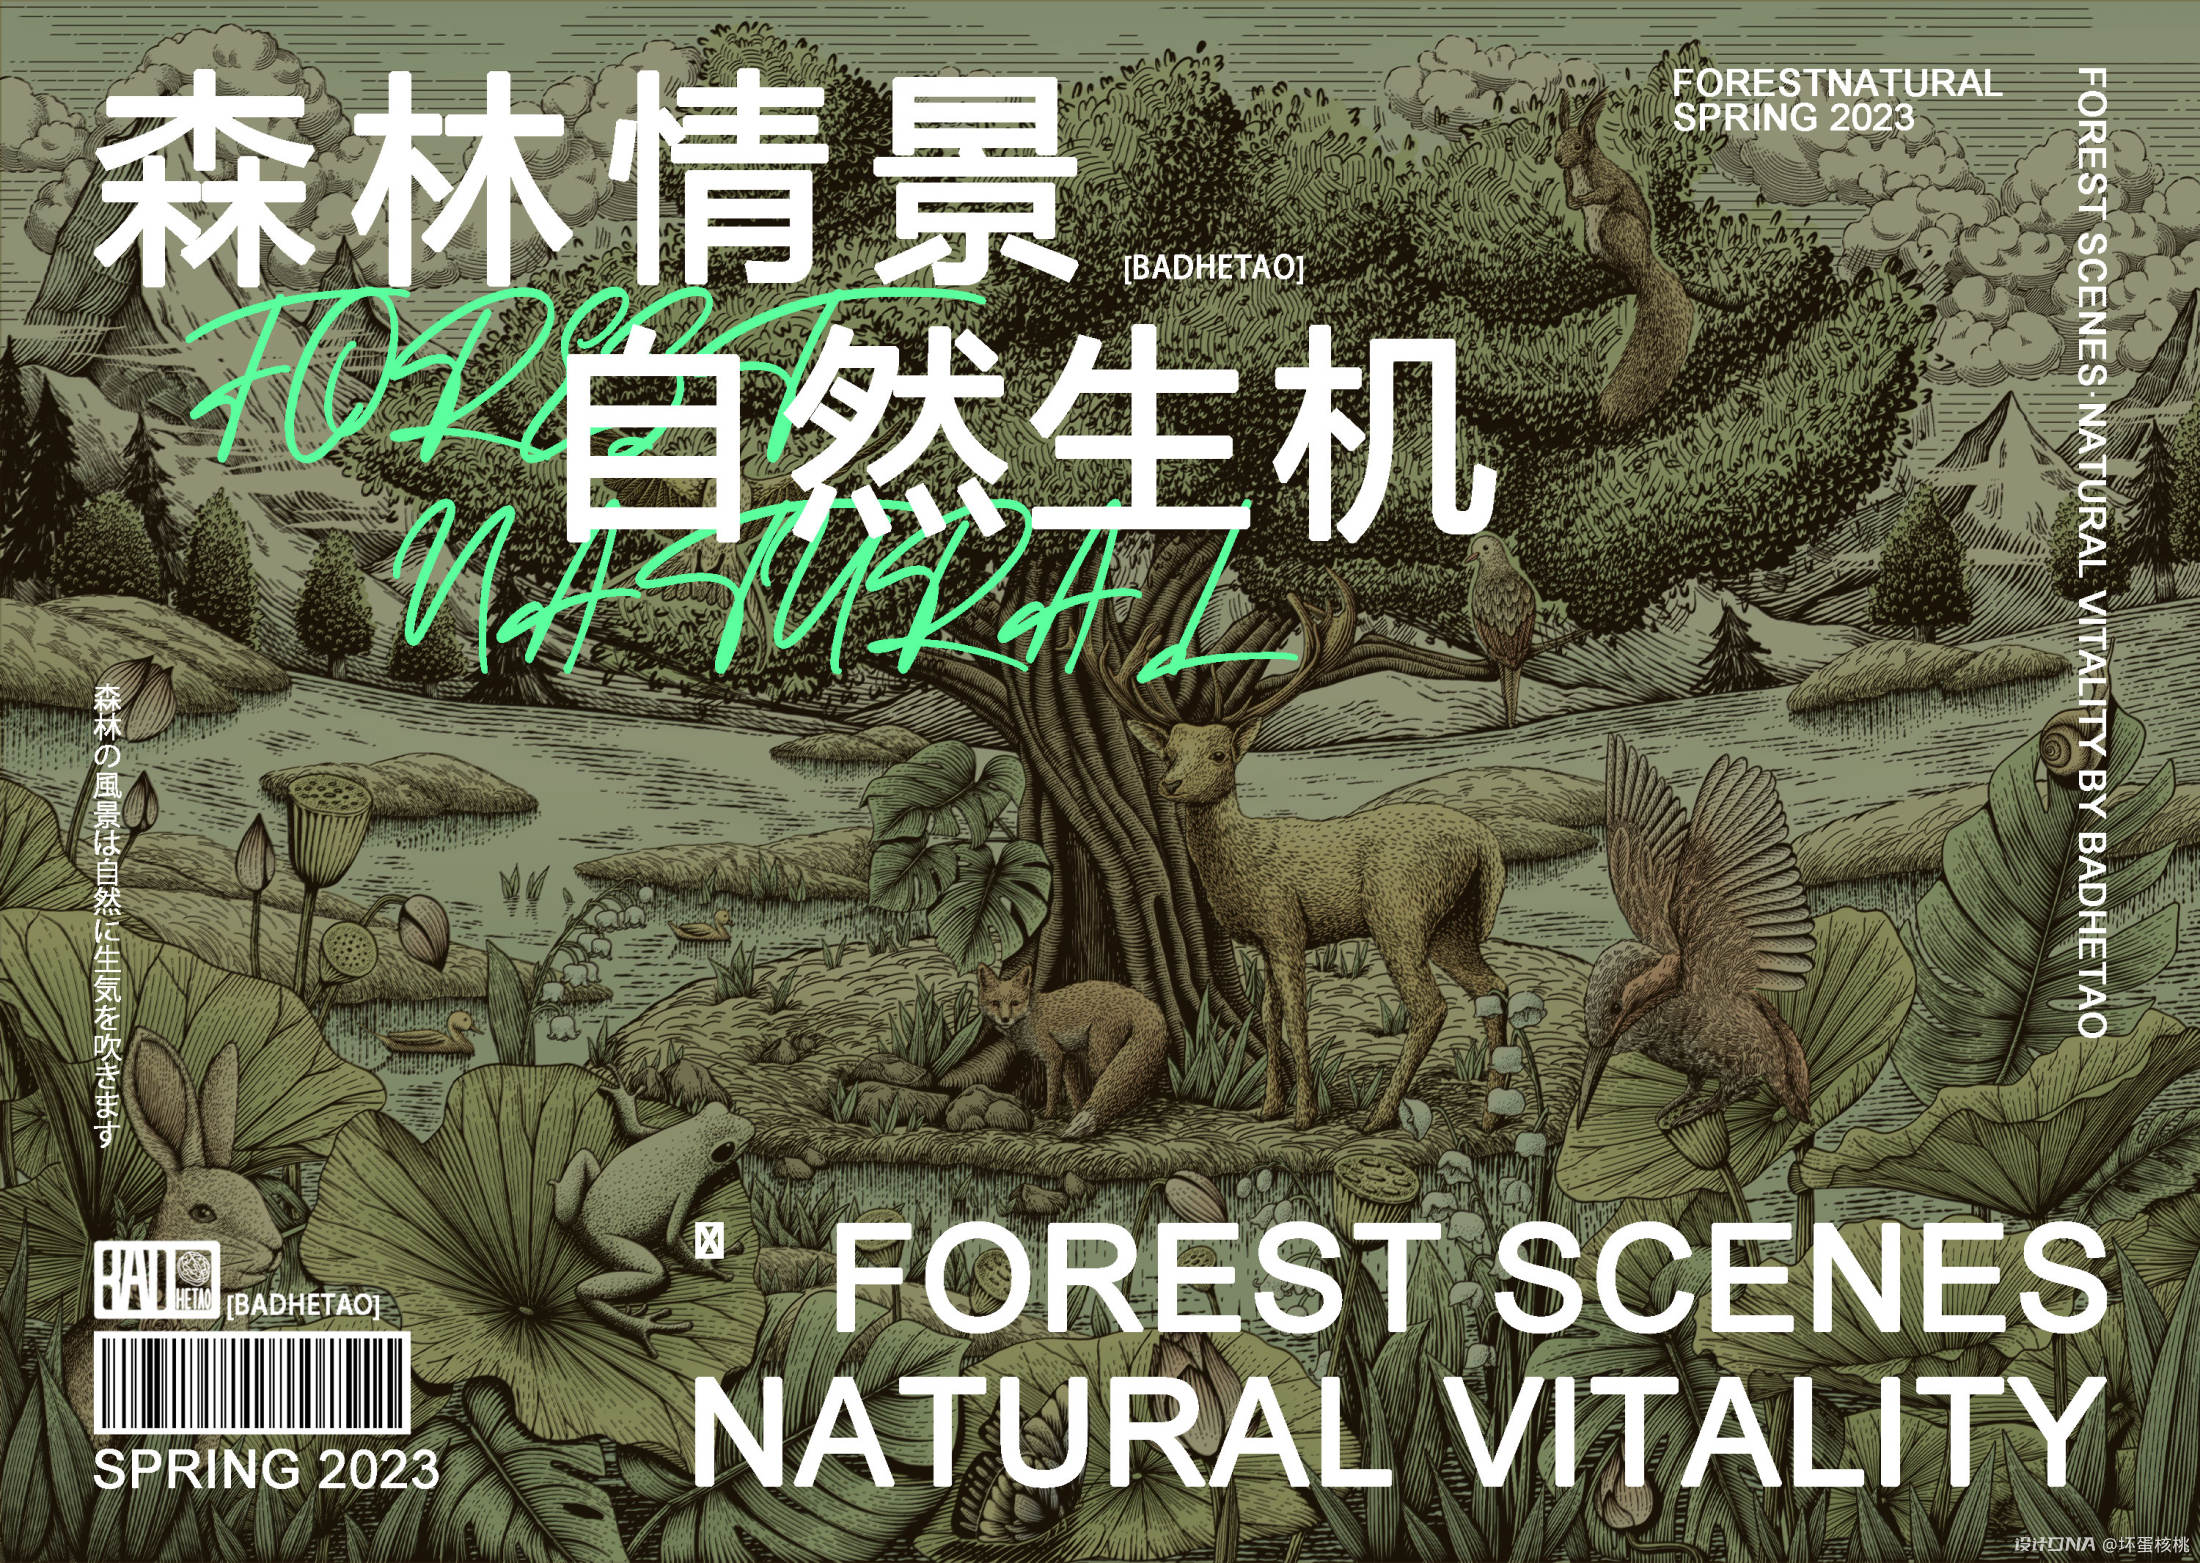 森林情景 自然生机|钢笔画风格包装插画 图2